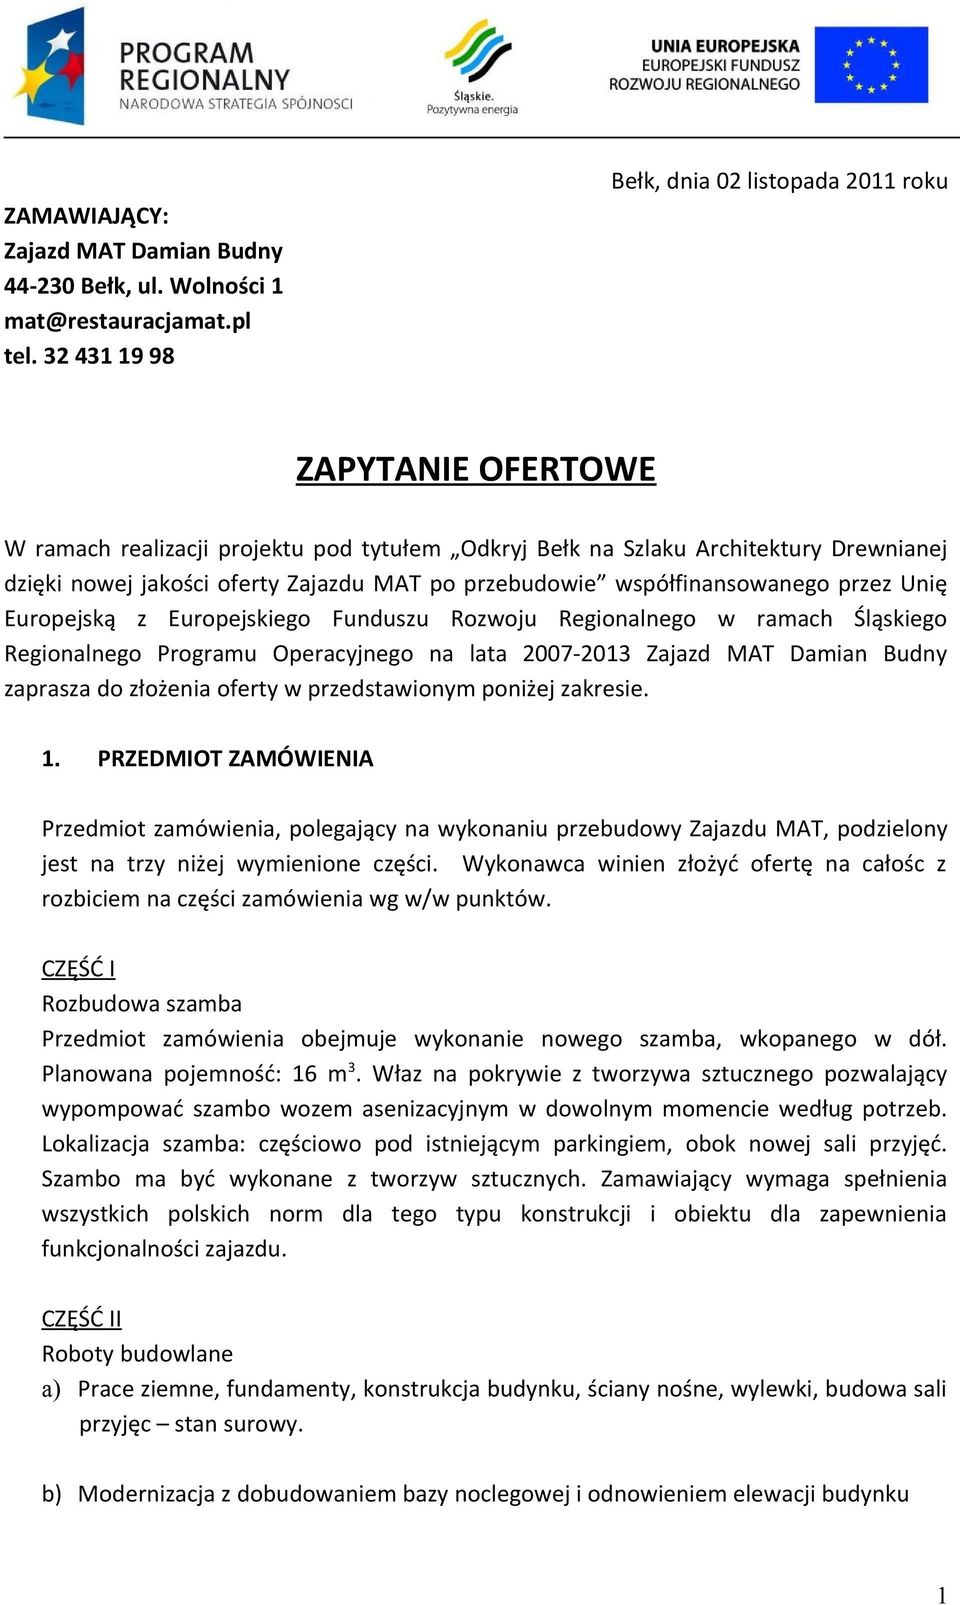 przebudowie współfinansowanego przez Unię Europejską z Europejskiego Funduszu Rozwoju Regionalnego w ramach Śląskiego Regionalnego Programu Operacyjnego na lata 2007-2013 Zajazd MAT Damian Budny